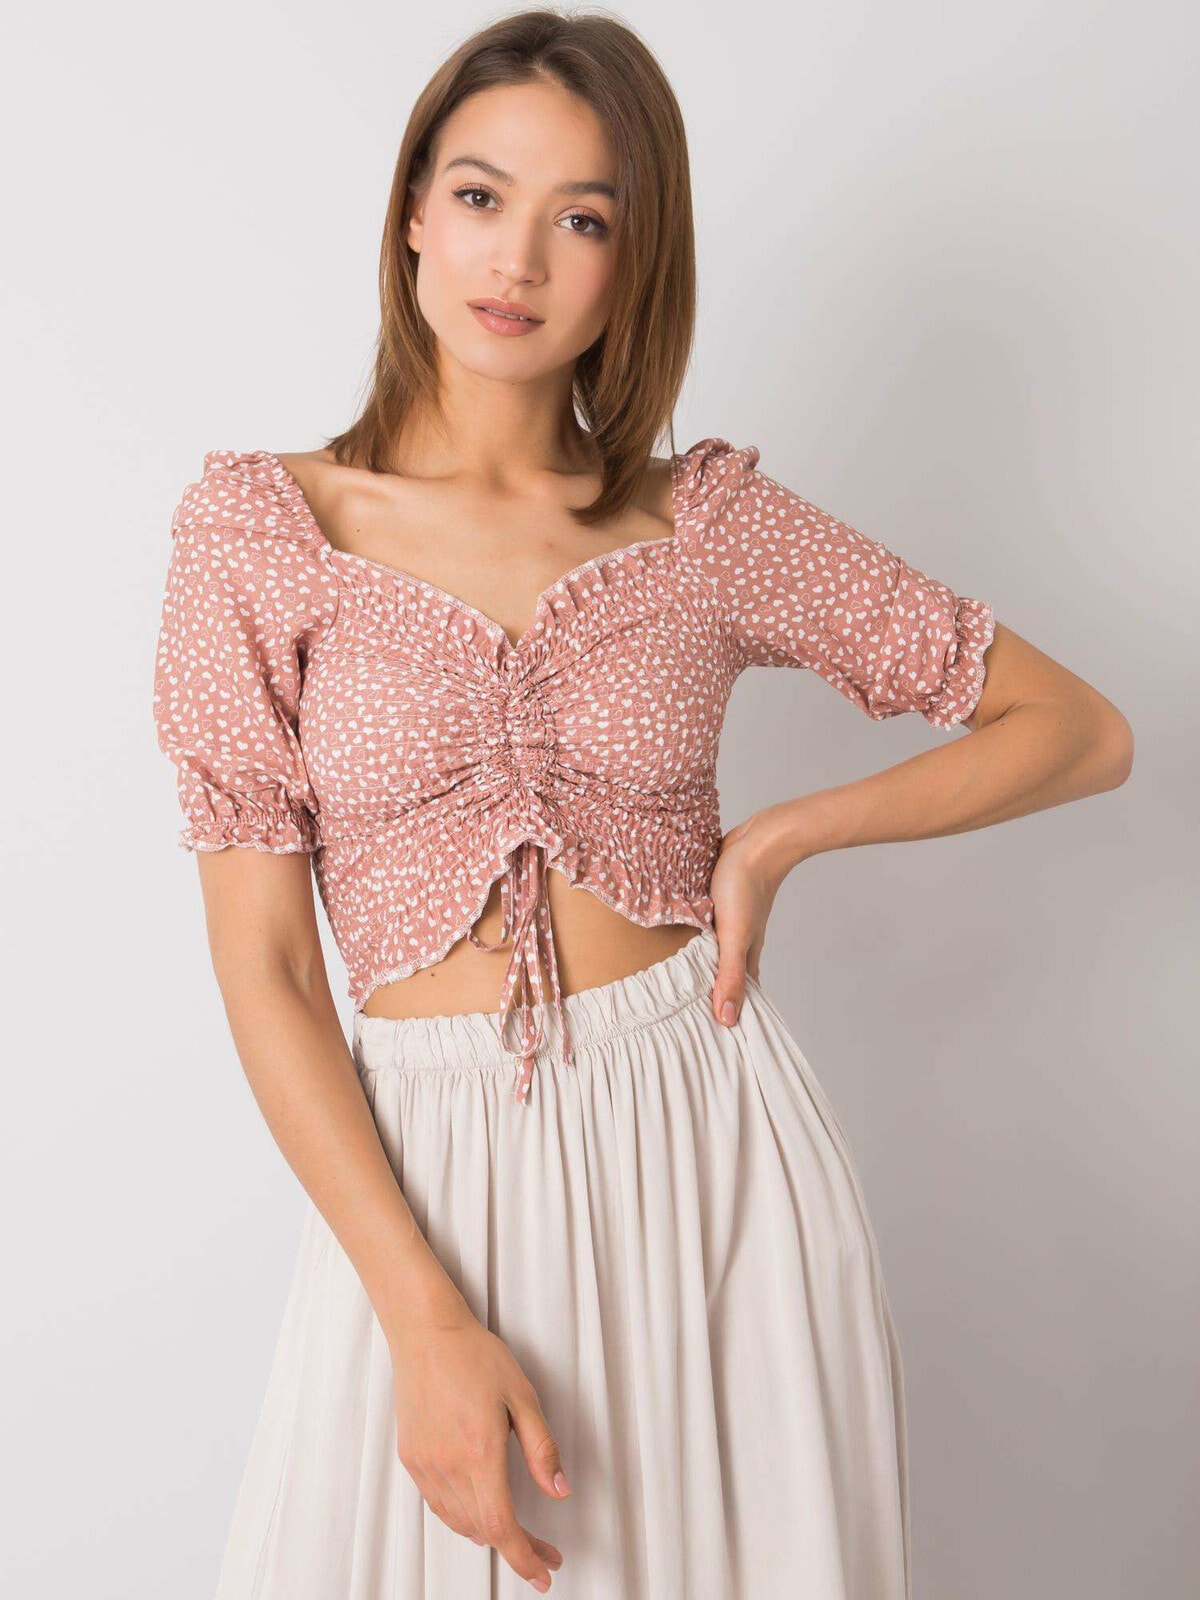 Женская укороченная блузка приталенного кроя с коротким рукавом розовая Factory Price